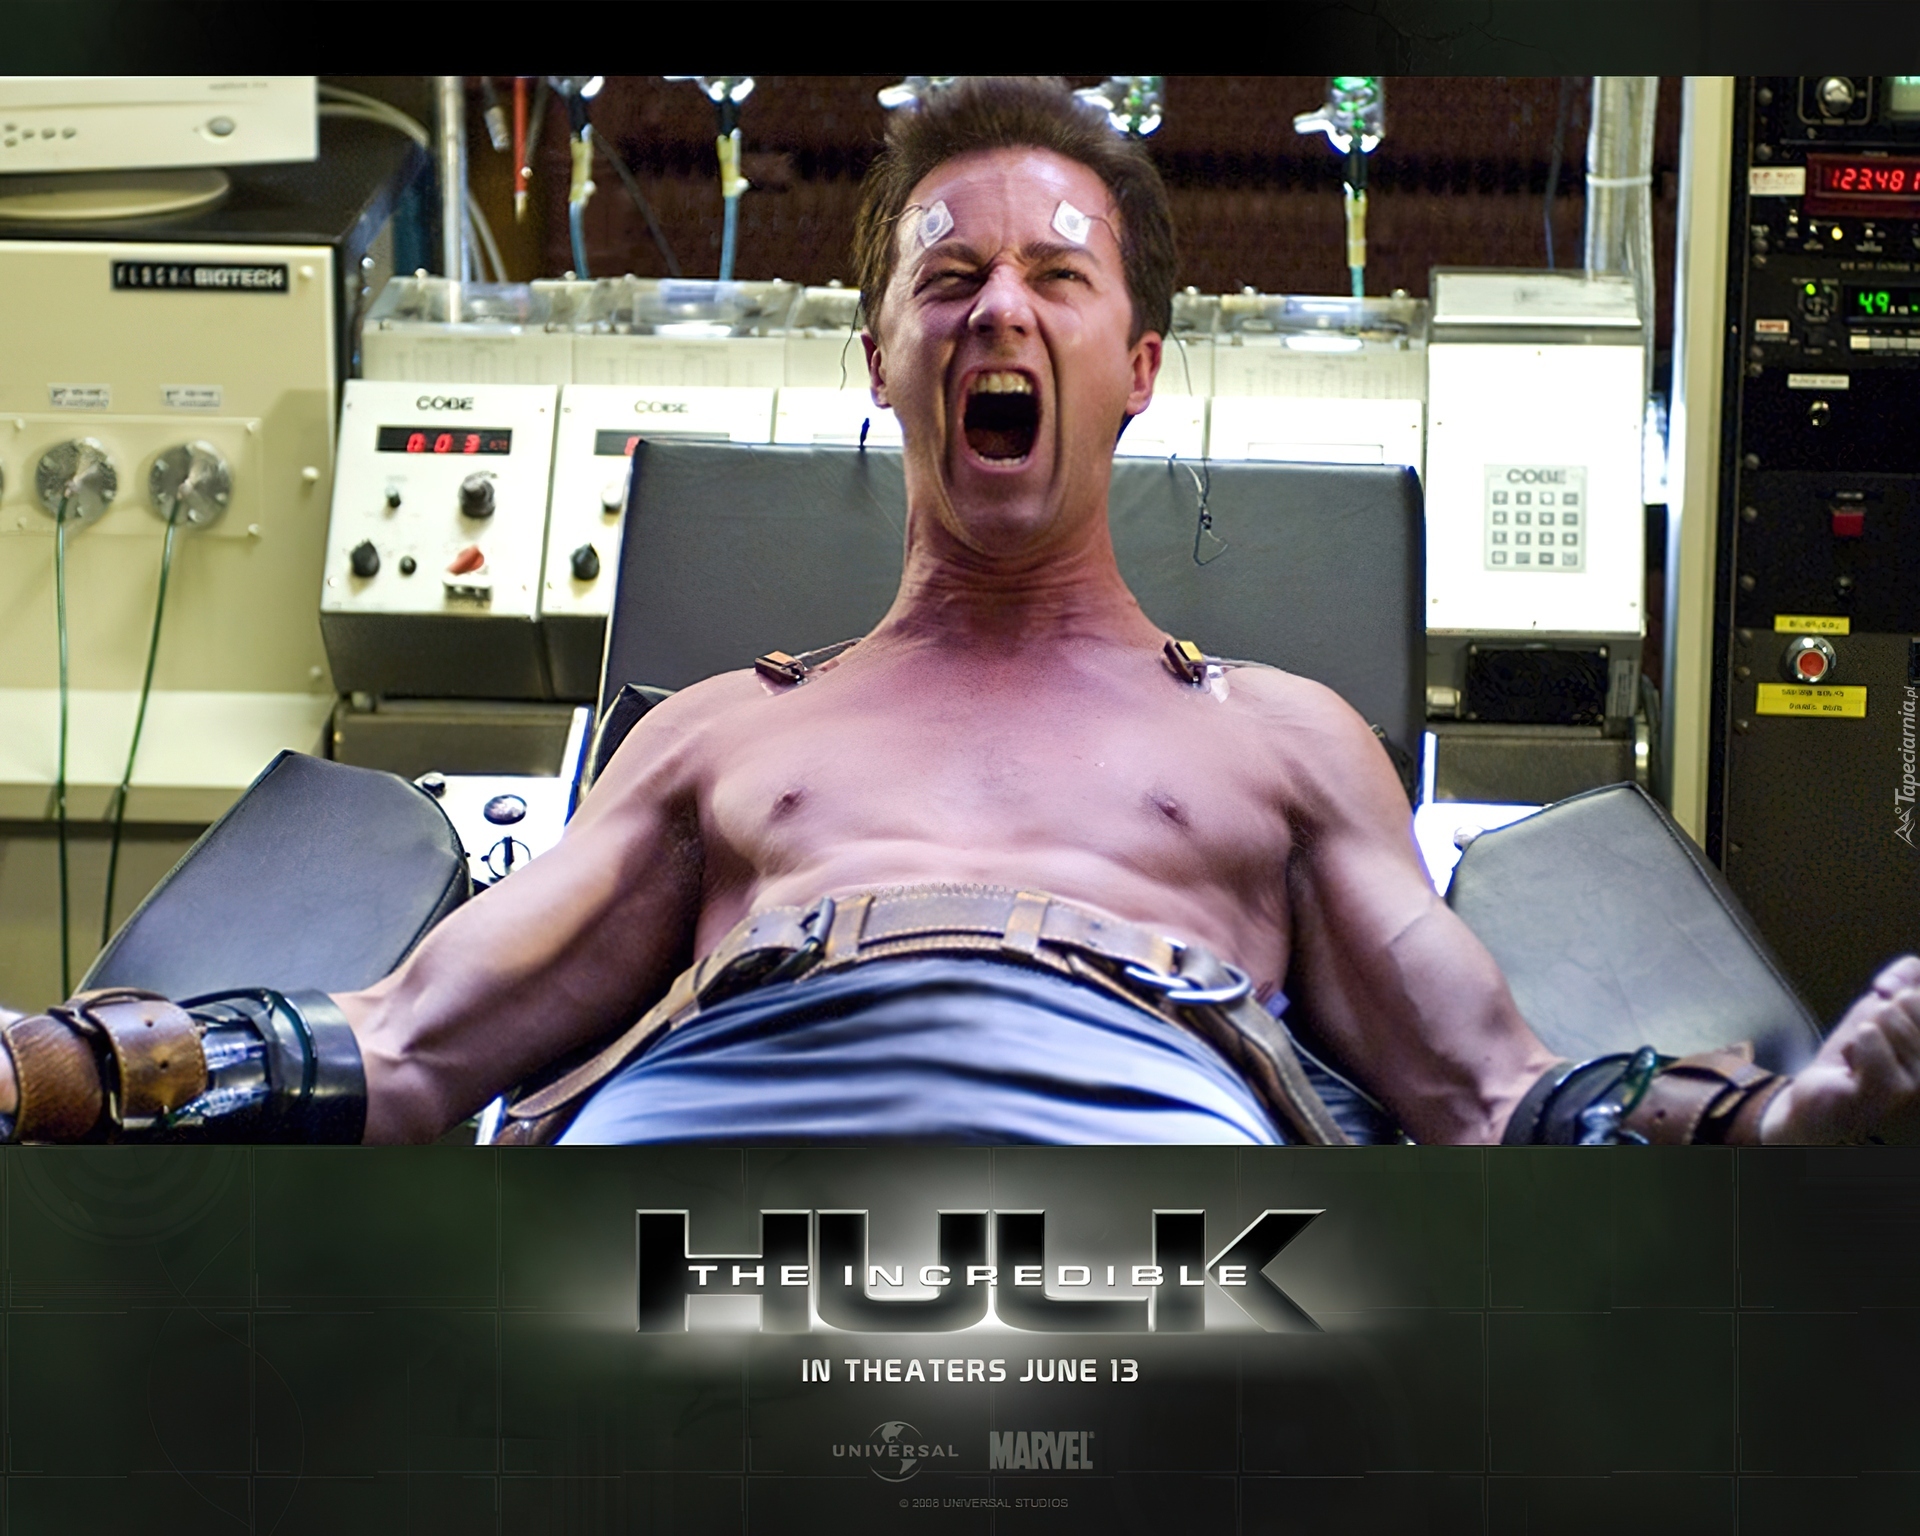 The Incredible Hulk, pasy, szpital, urządzenia, aktor